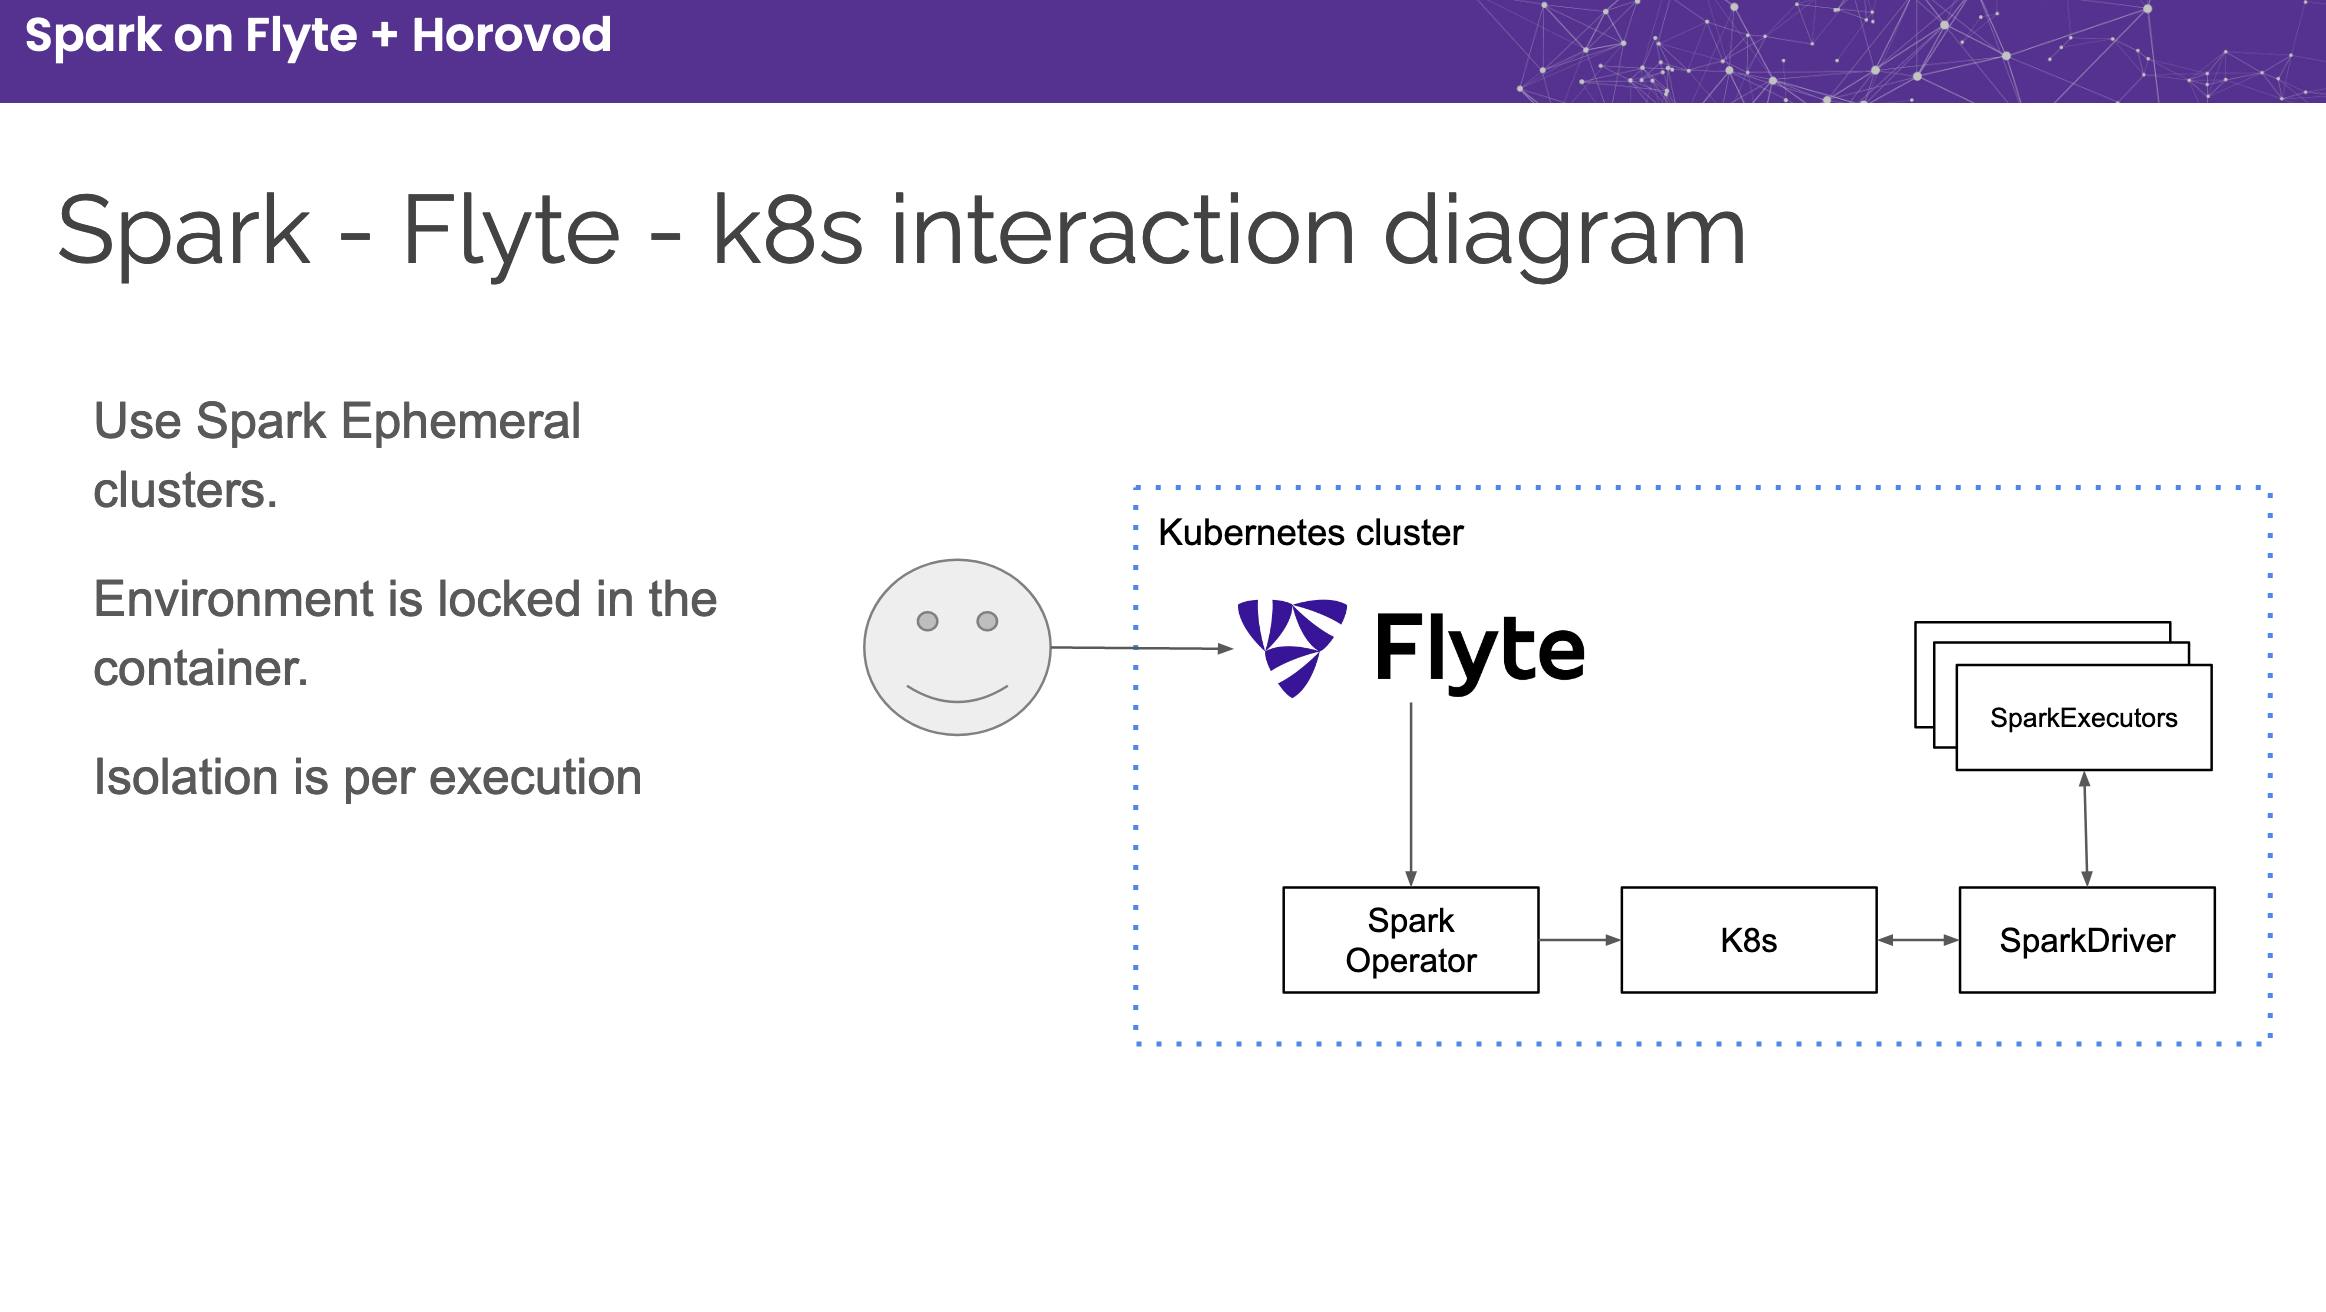 Flyte-Spark integration